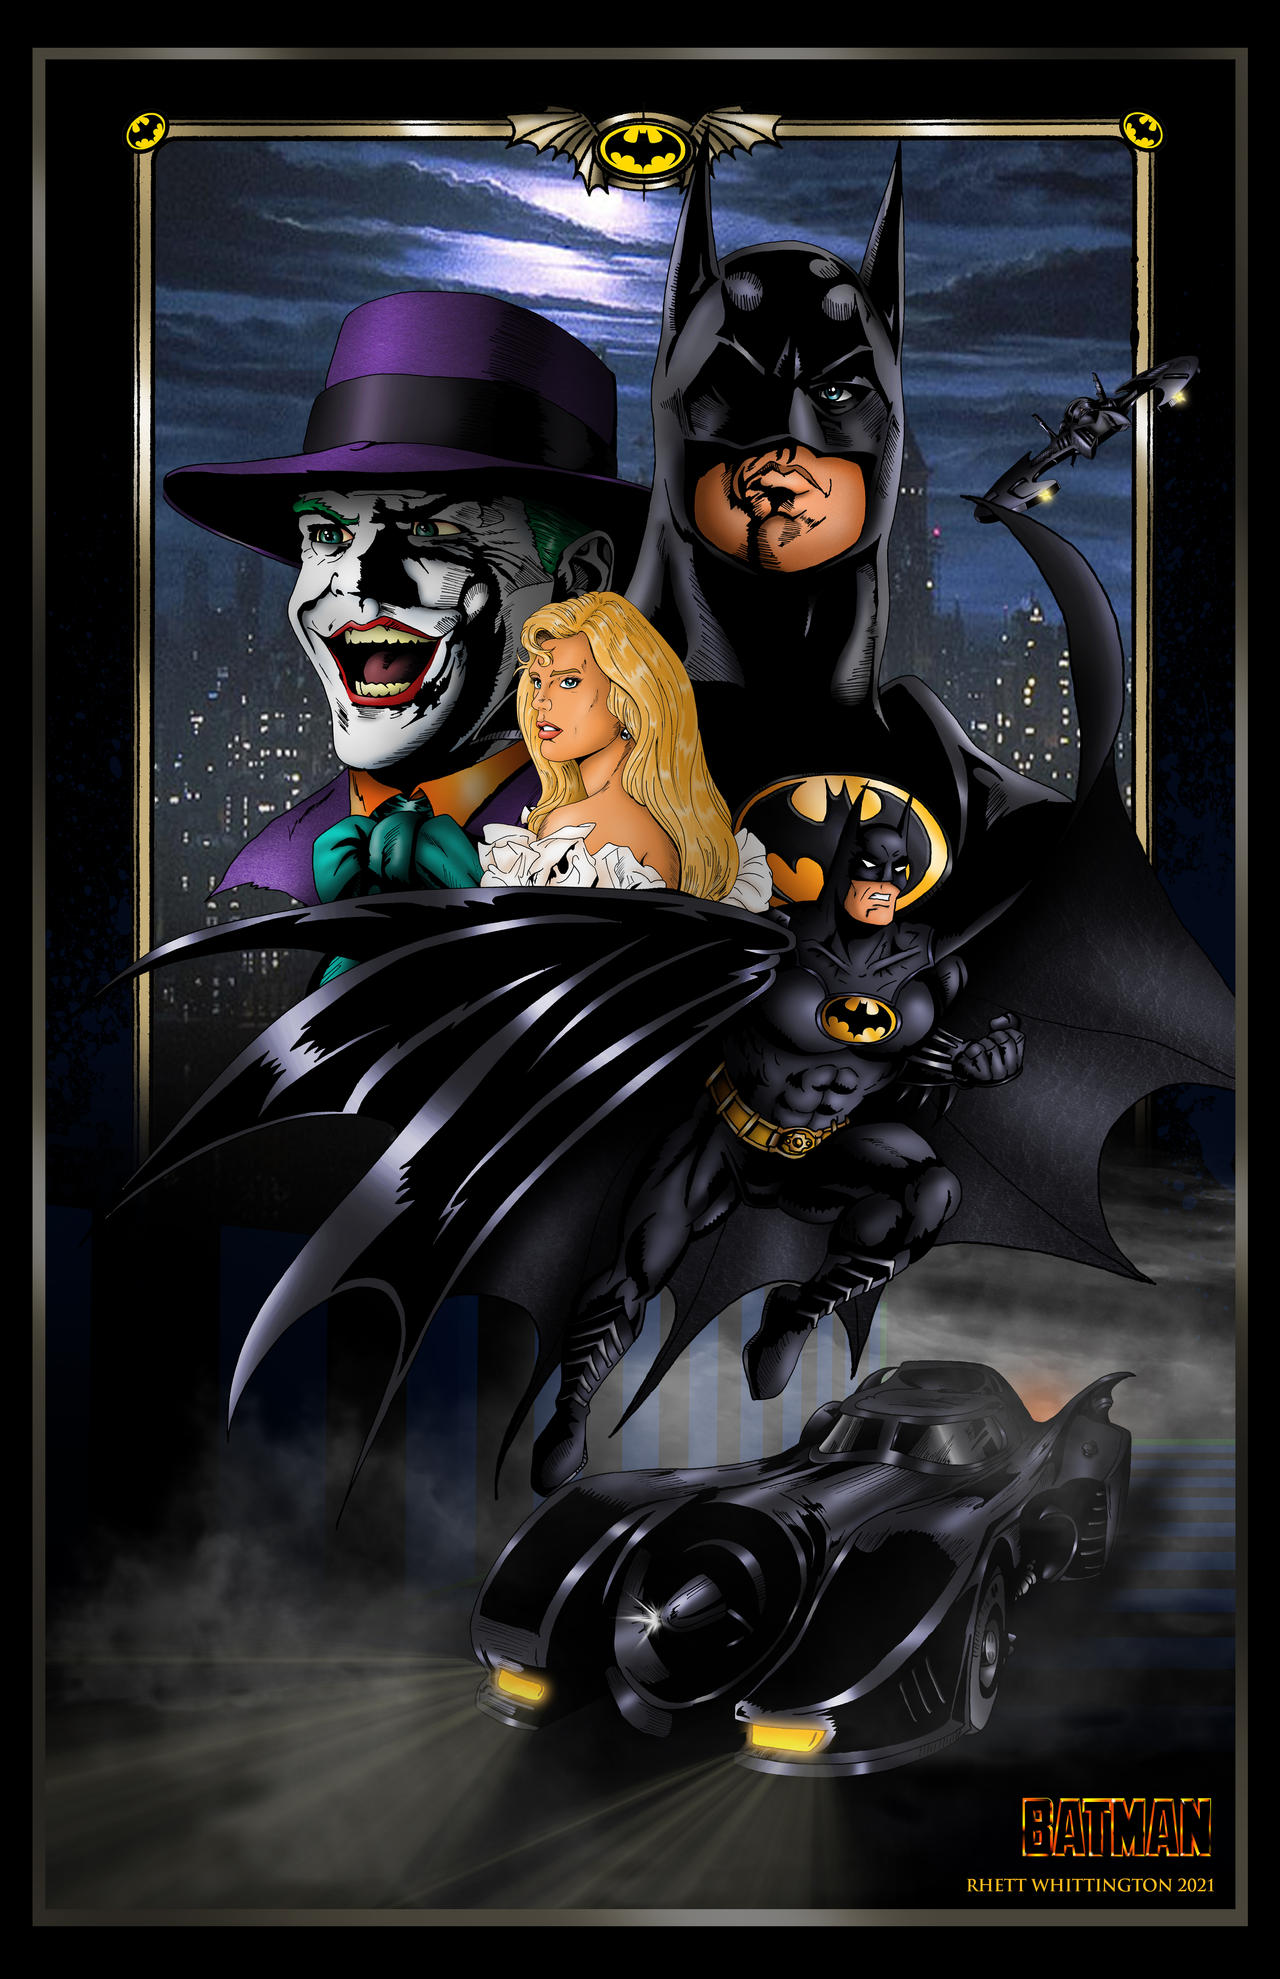 Batman 89 poster by whittingtonrhett on DeviantArt